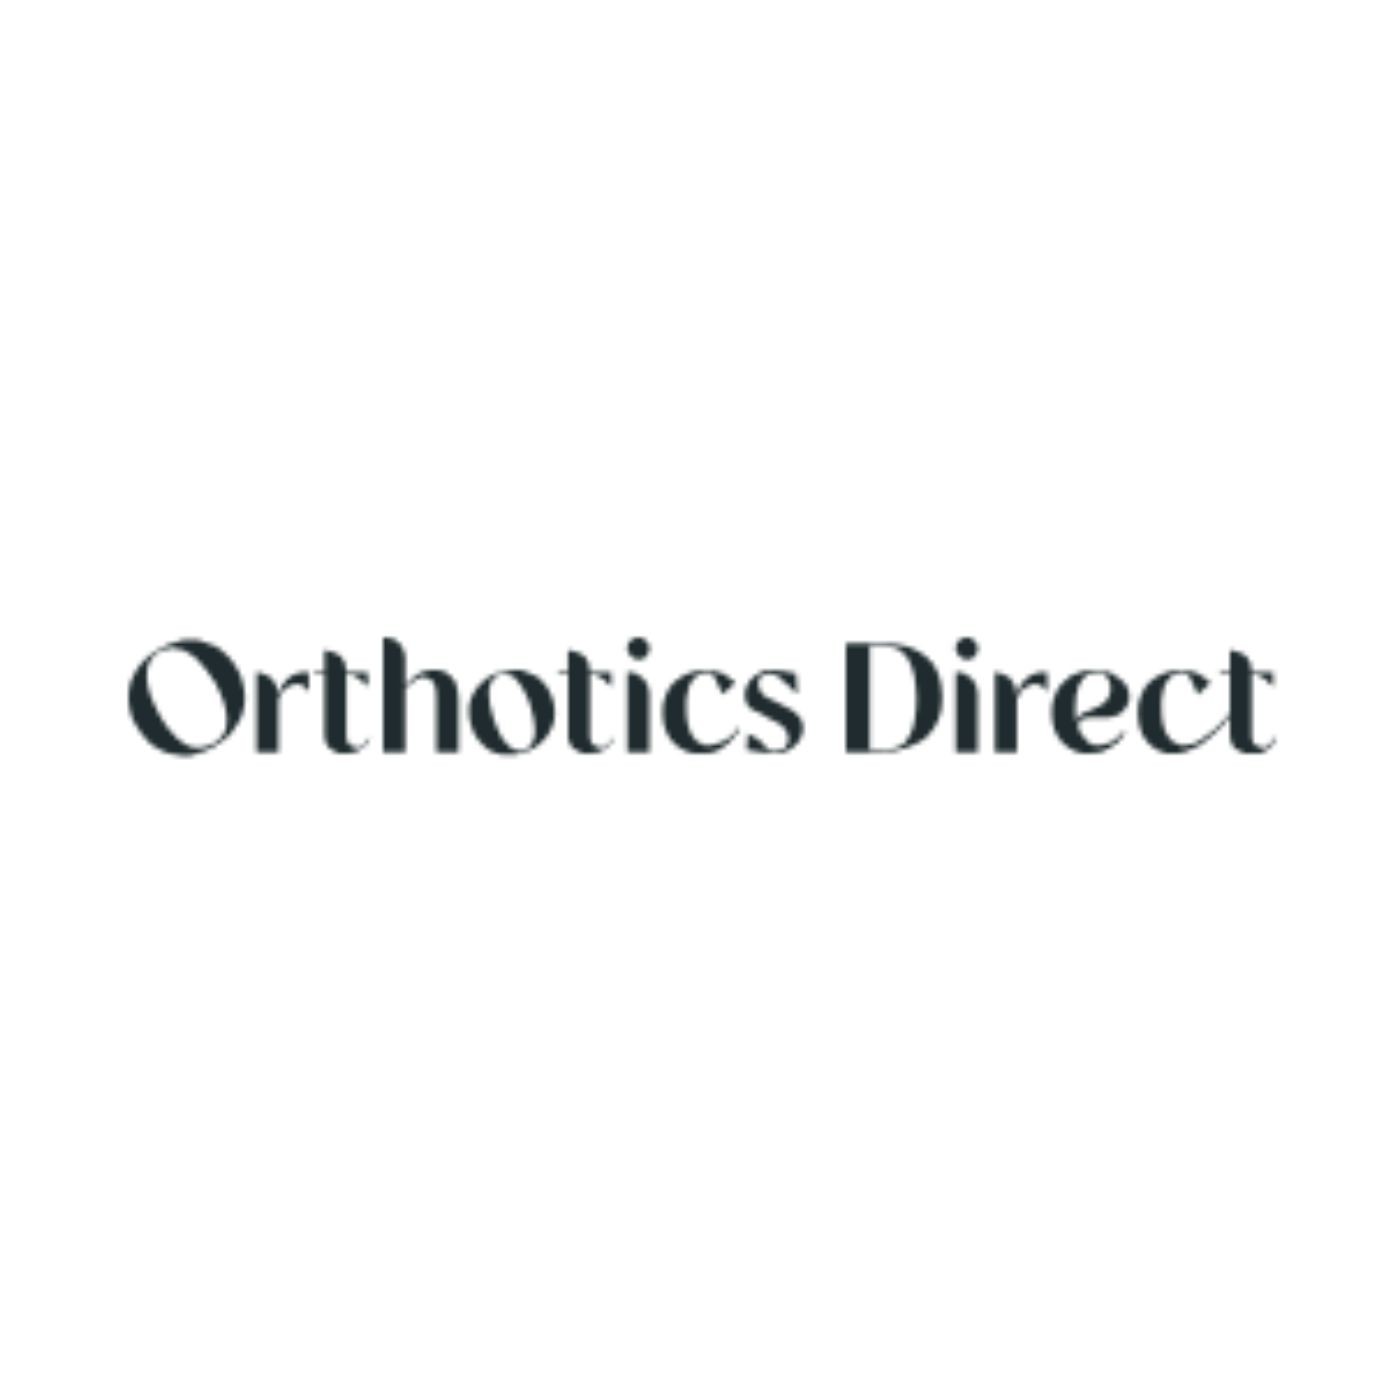 OrthoticsDirect